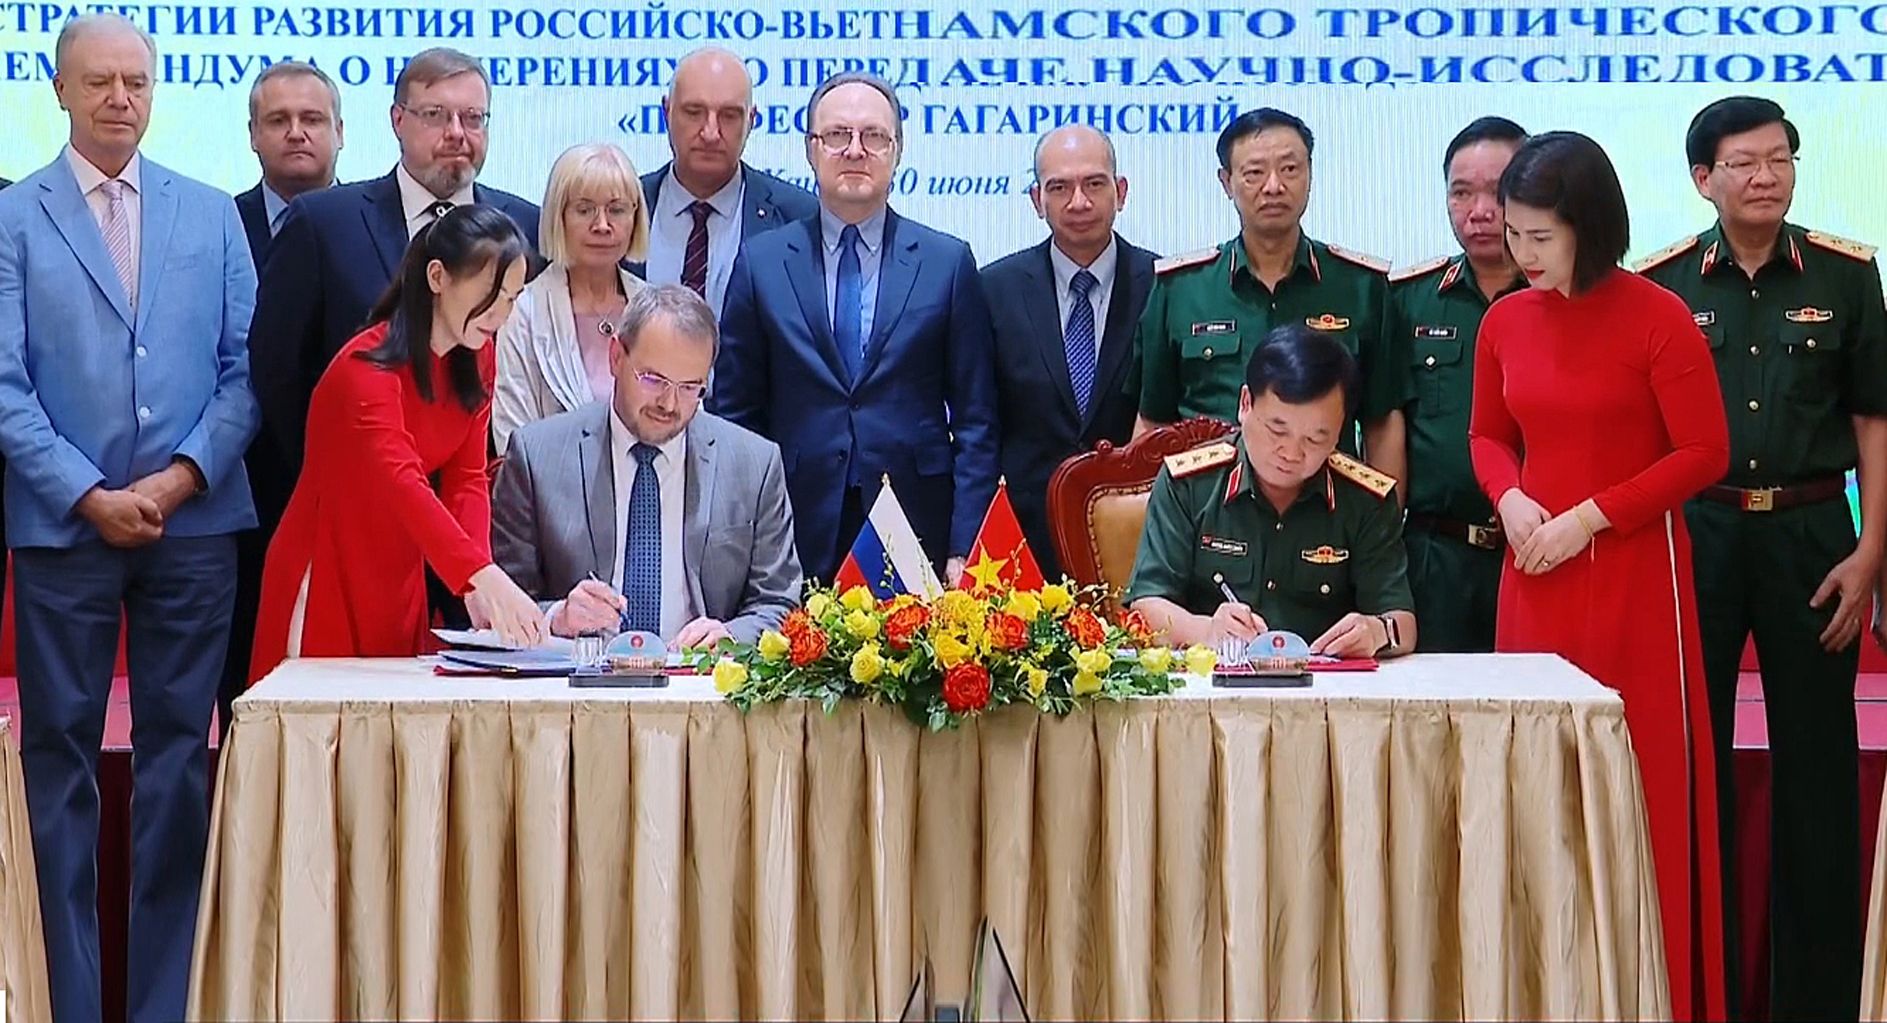 Phiên họp Thường trực Ủy ban phối hợp liên Chính phủ về Trung tâm Nhiệt đới Việt-Nga